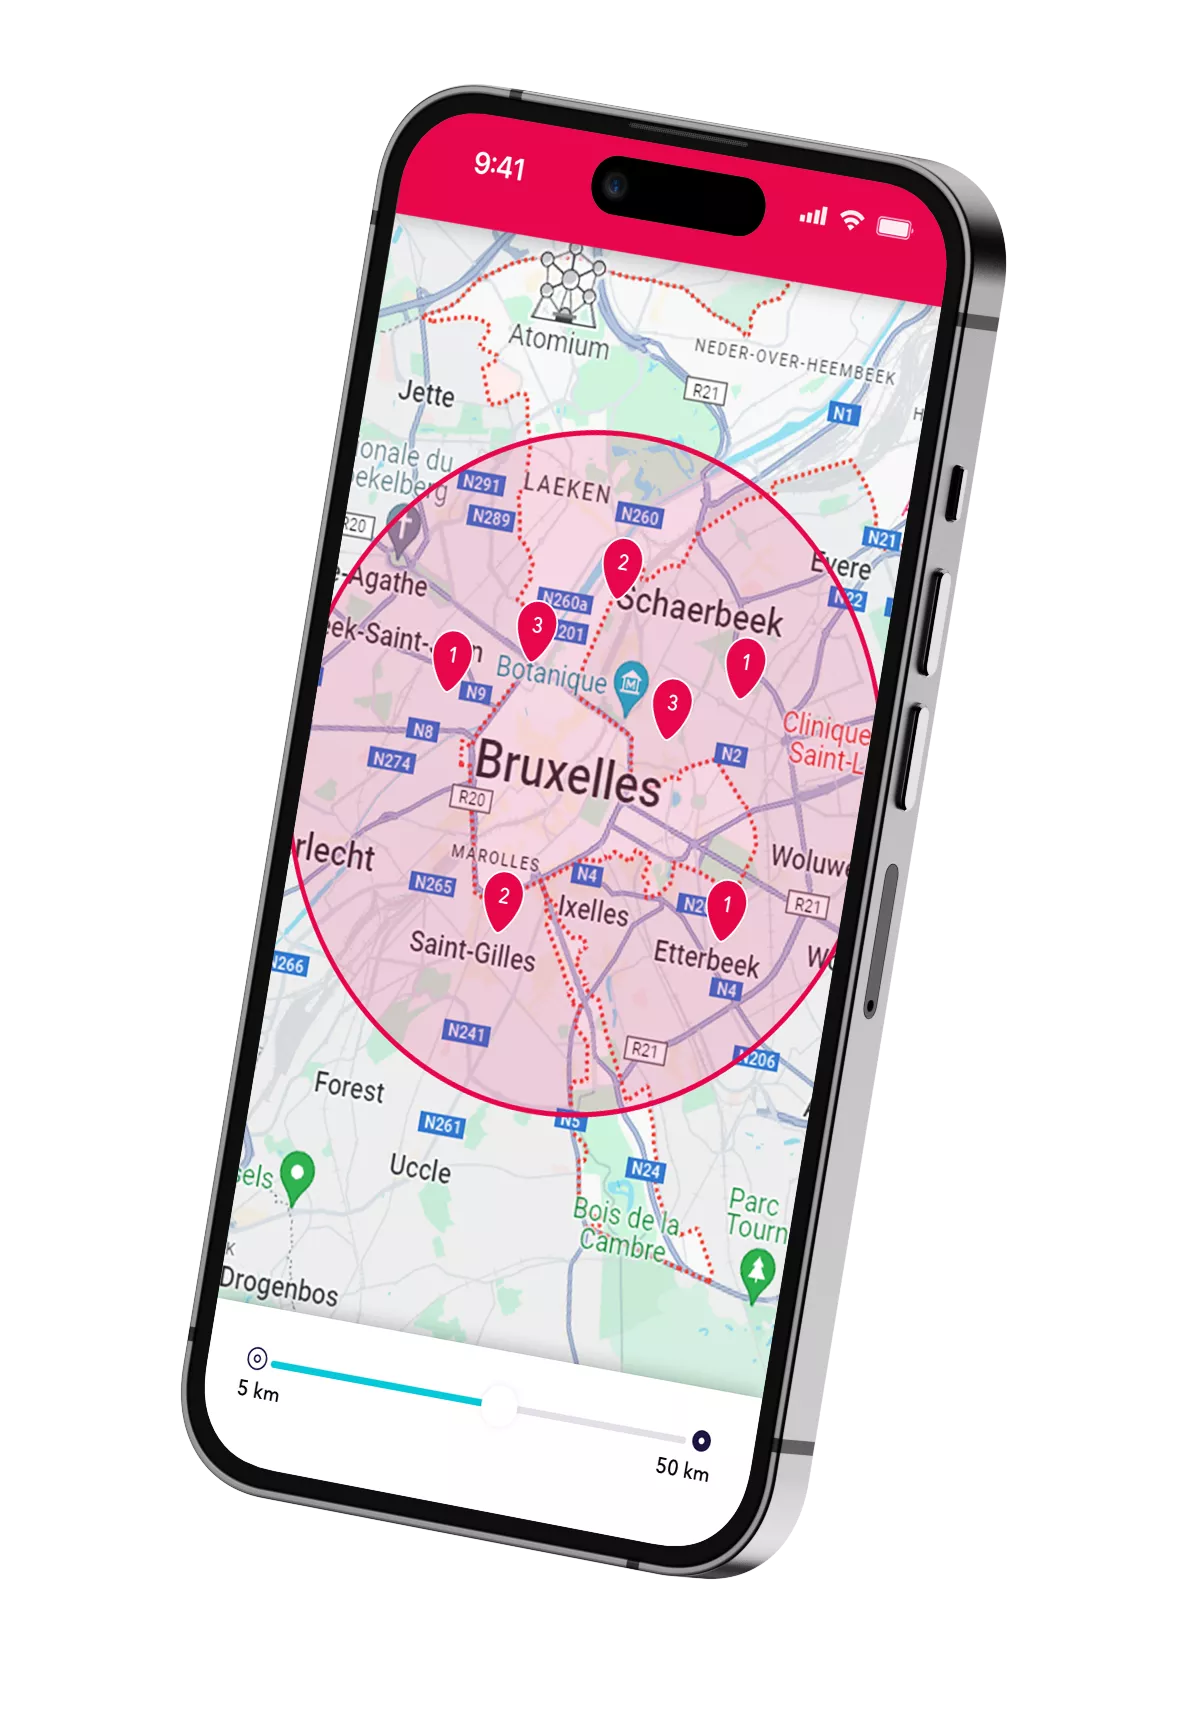 Un smartphone avec la carte de Bruxelles montrant les possibilités de flexi-jobs